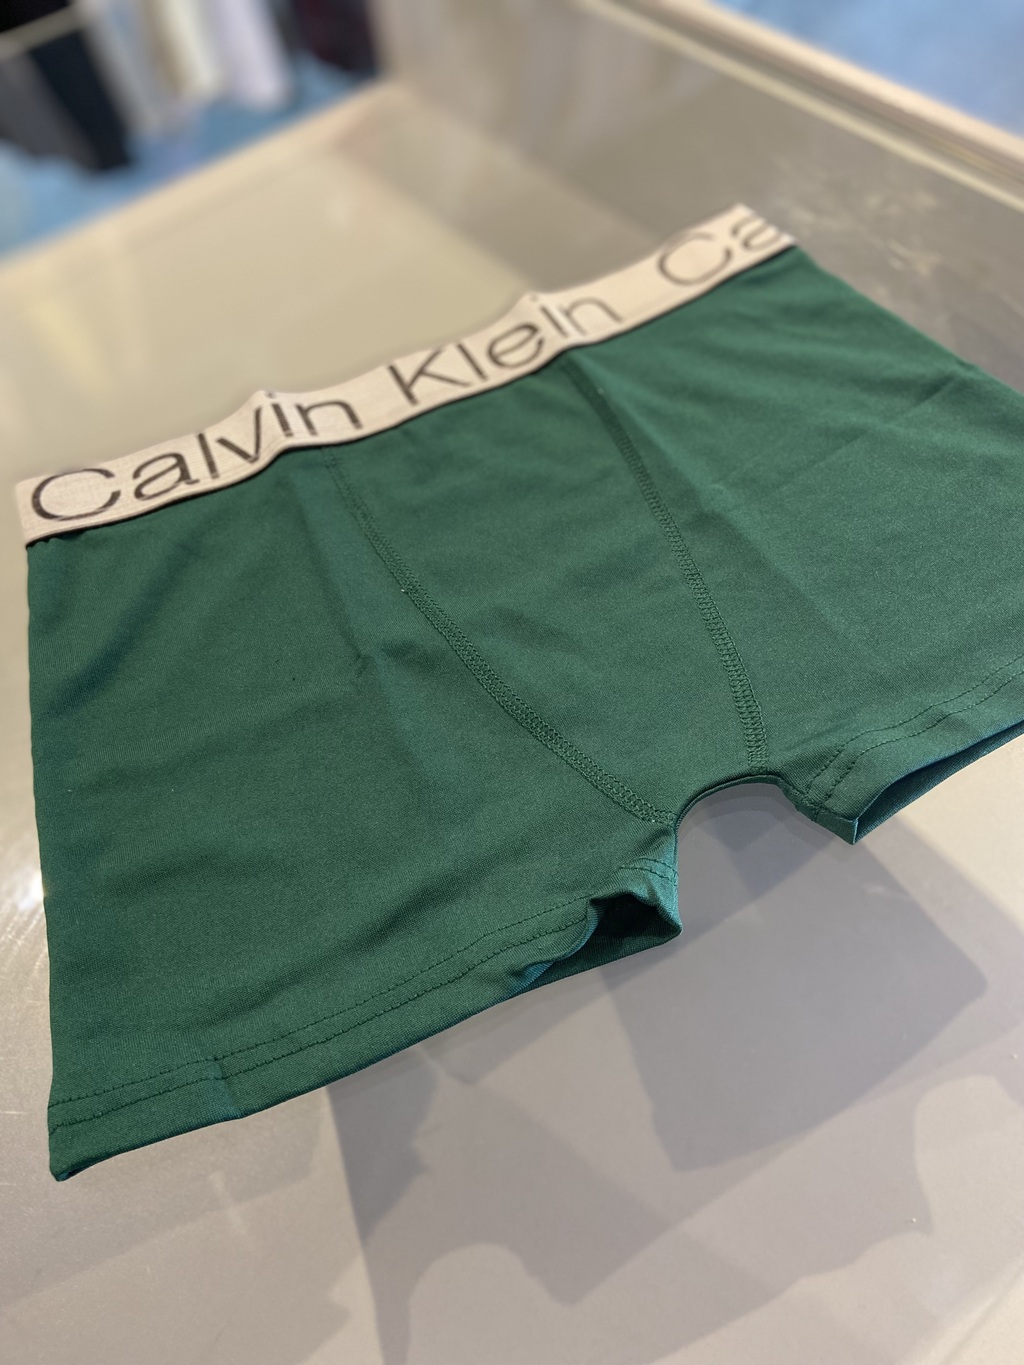 Cueca Calvin Klein Estampada com Folhas Azul Preto Verde e Cinza de malha  fria